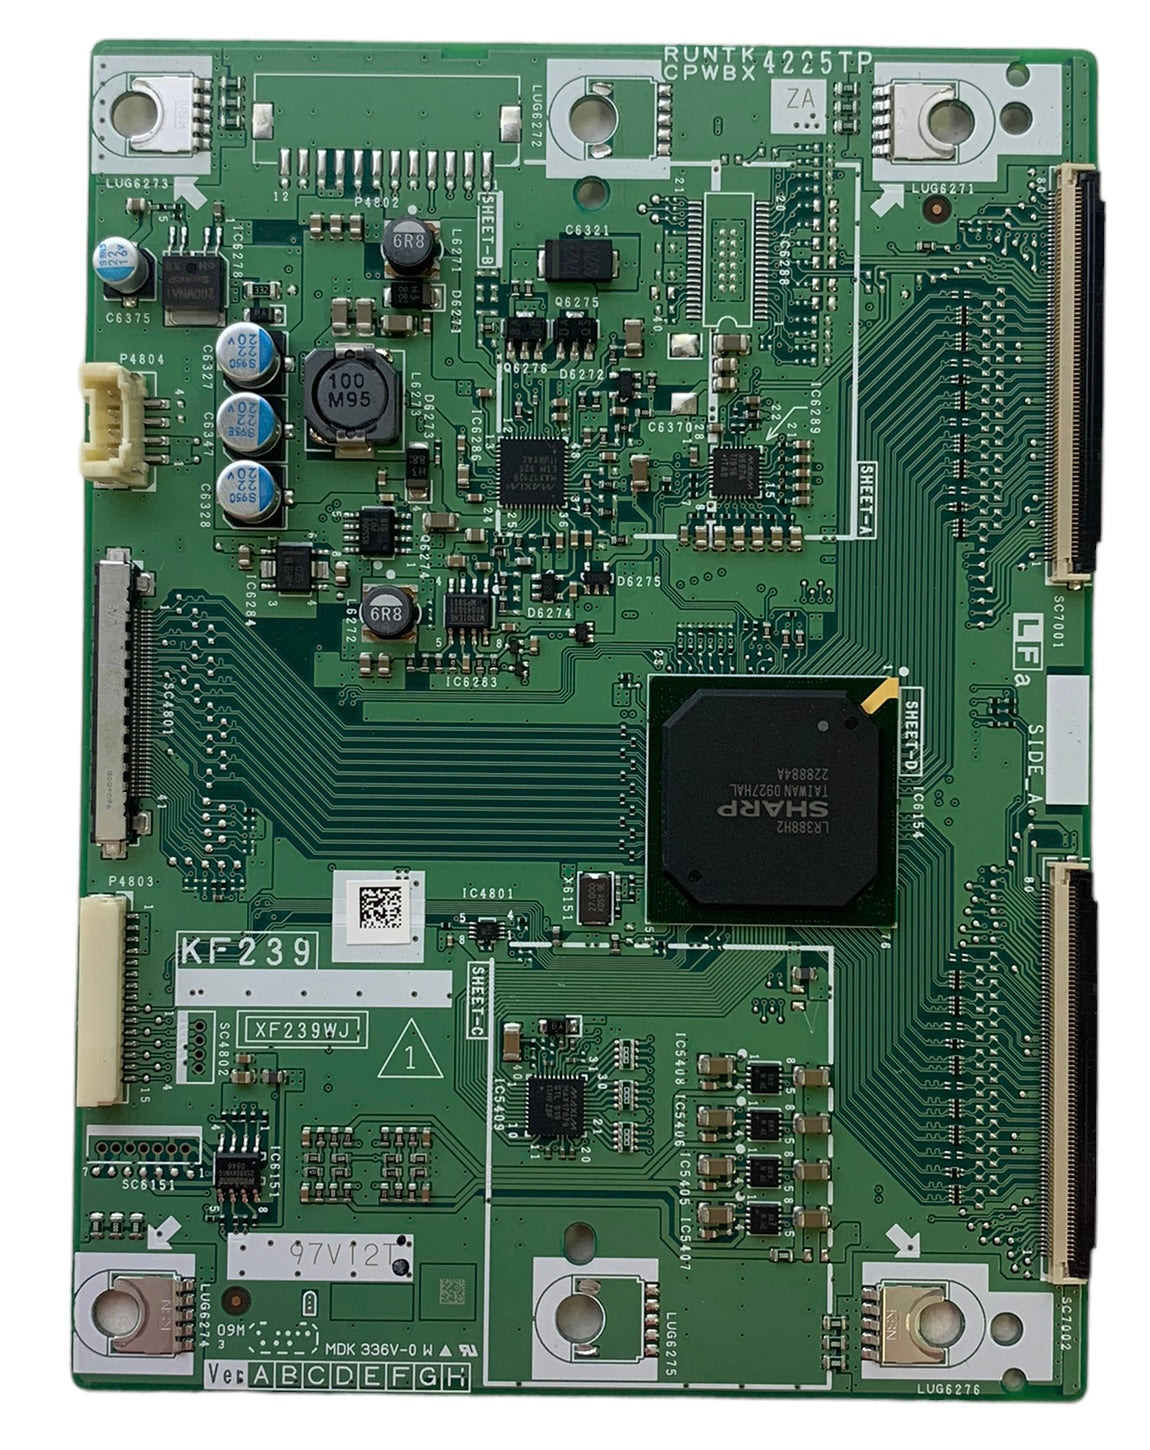 Sharp RUNTK4225TPZA (KF239, XF239WJ) T-Con Board